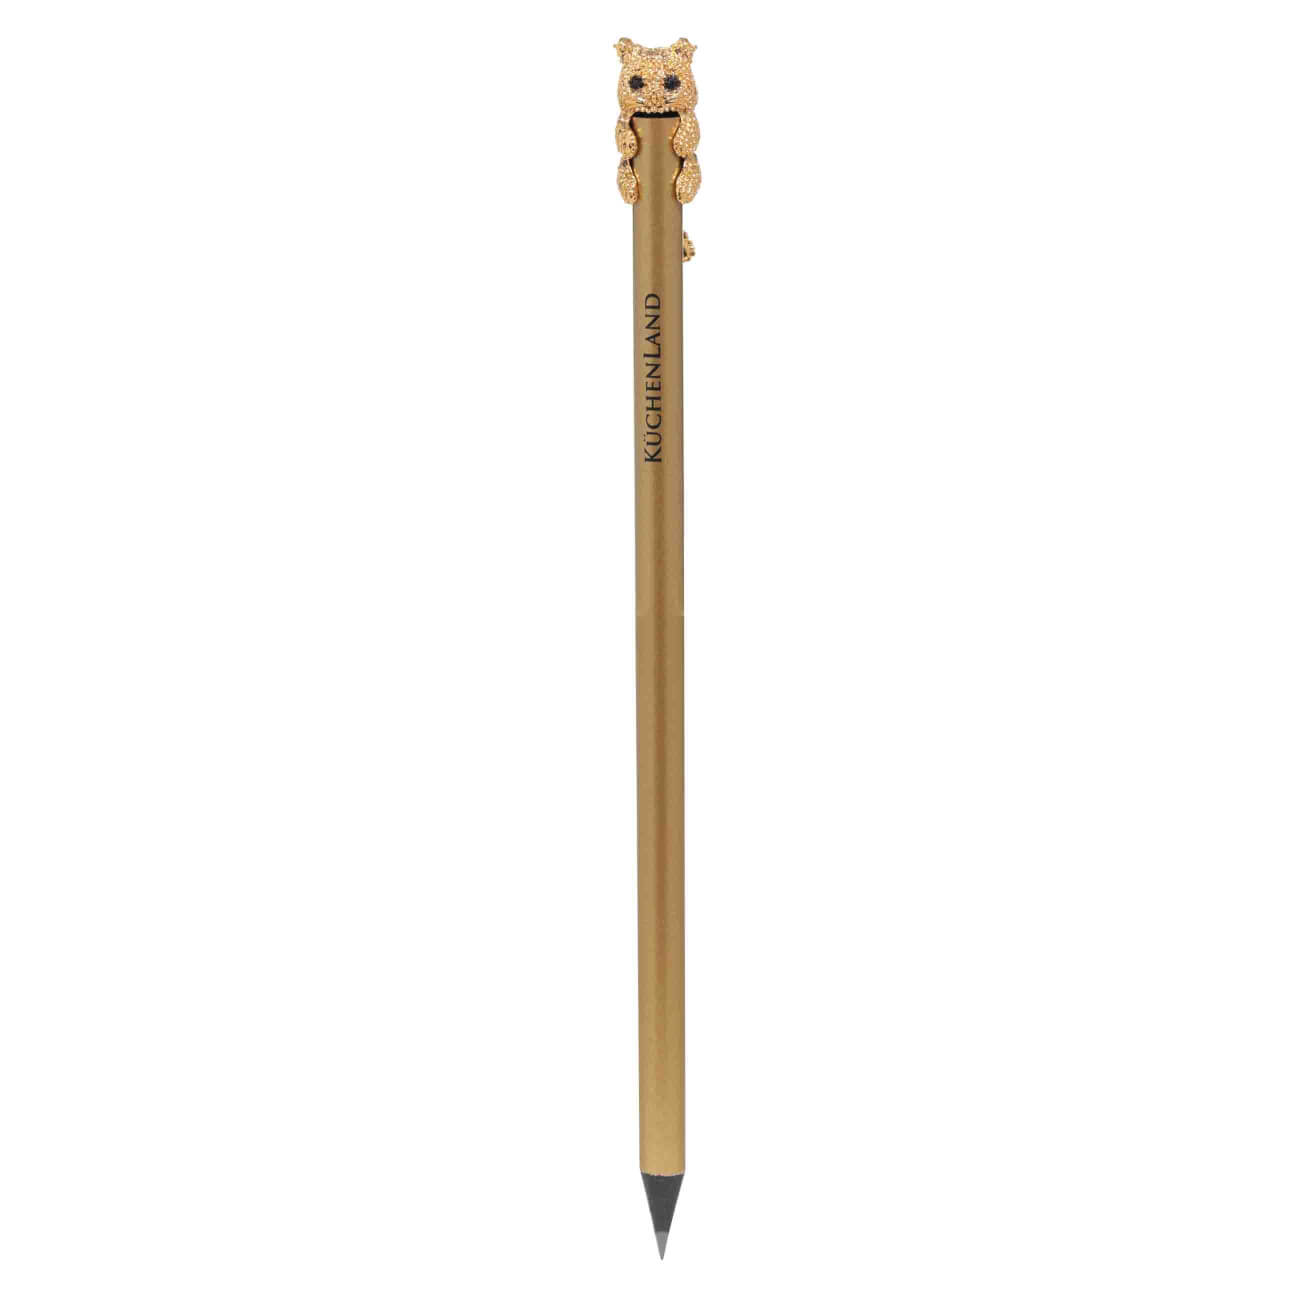 Карандаш, 18 см, чернографитный, с фигуркой, золотистый, Кот, Draw чернографитный карандаш bruno visconti